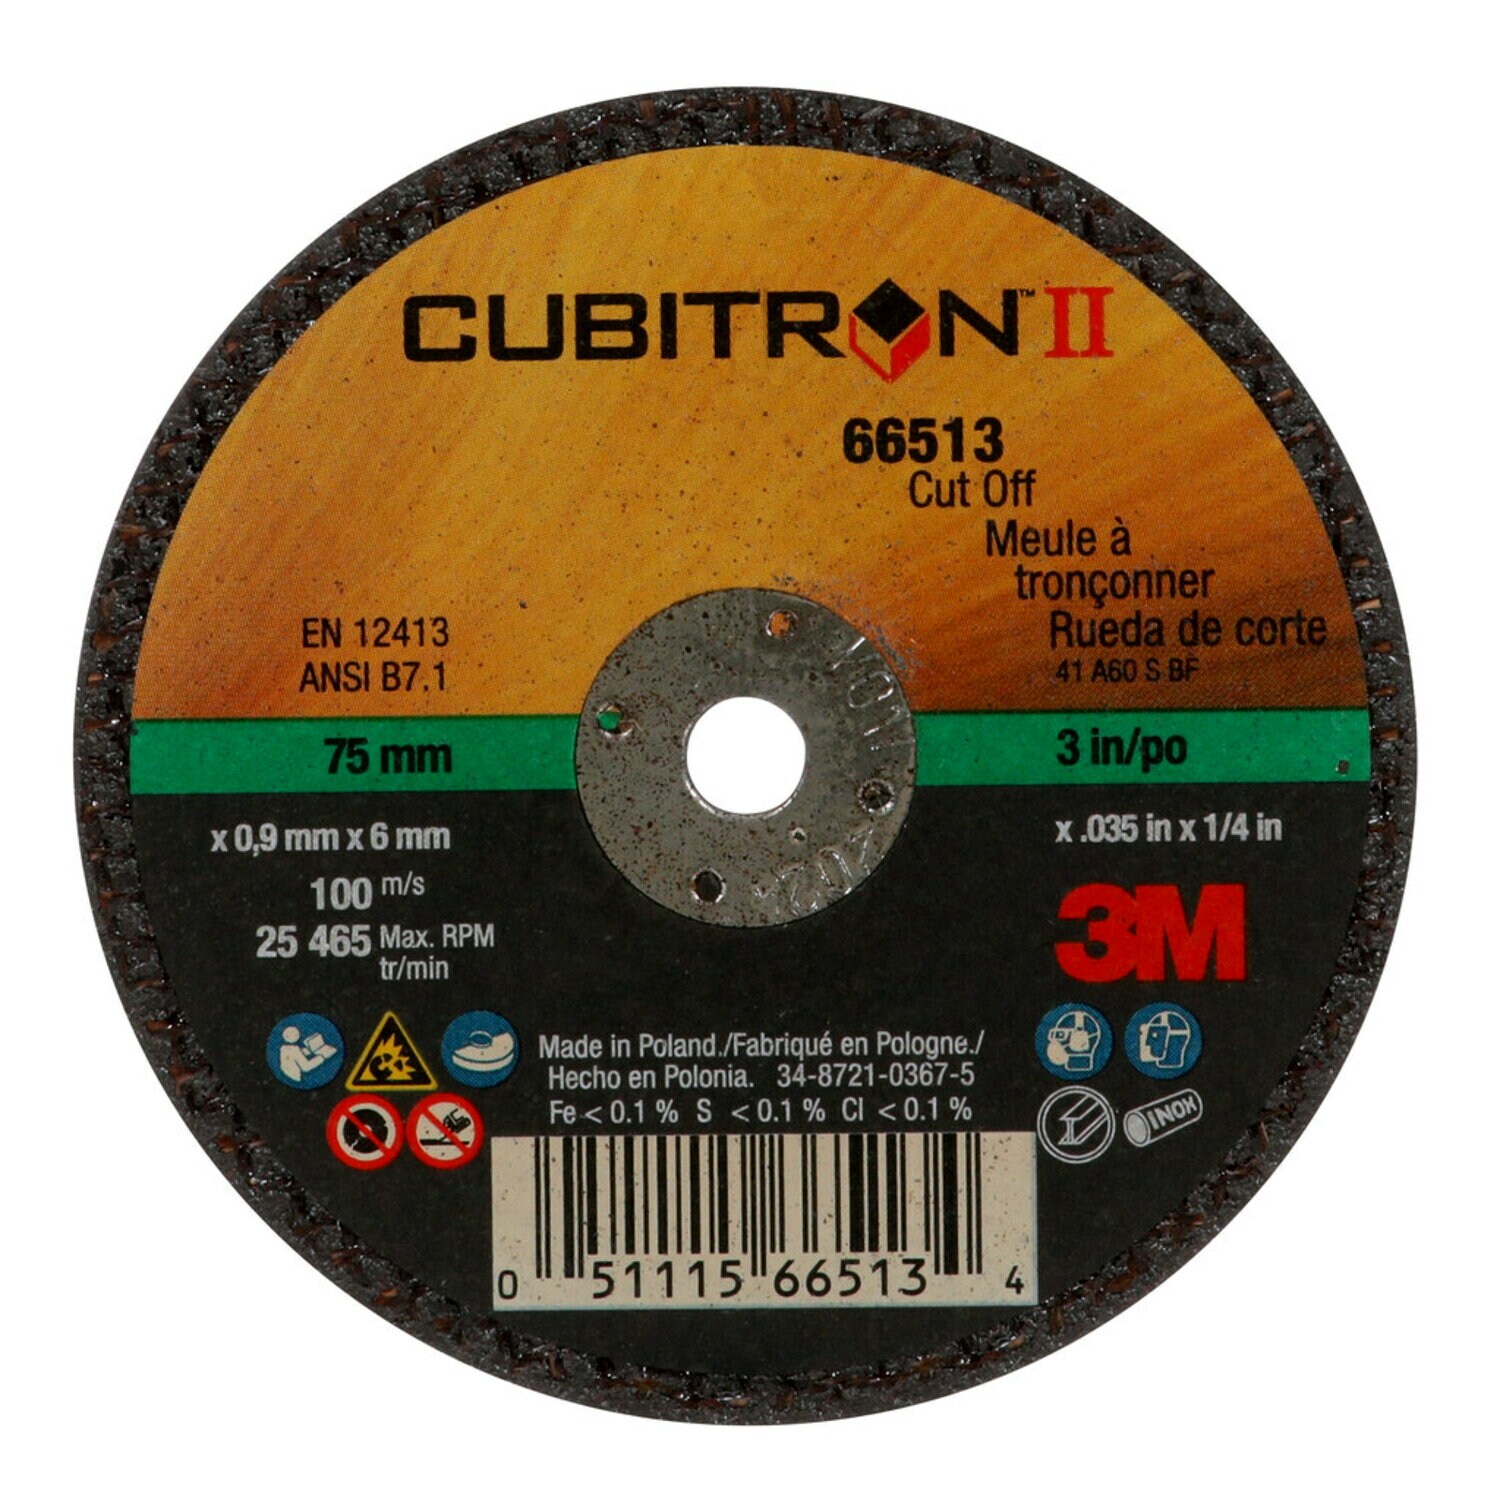 7100094770 - 3M Cubitron II Cut-Off Wheel, 66513, 60, Type 1, 3 in x 0.035 in x 1/4 in, 25/Carton, 50 ea/Case